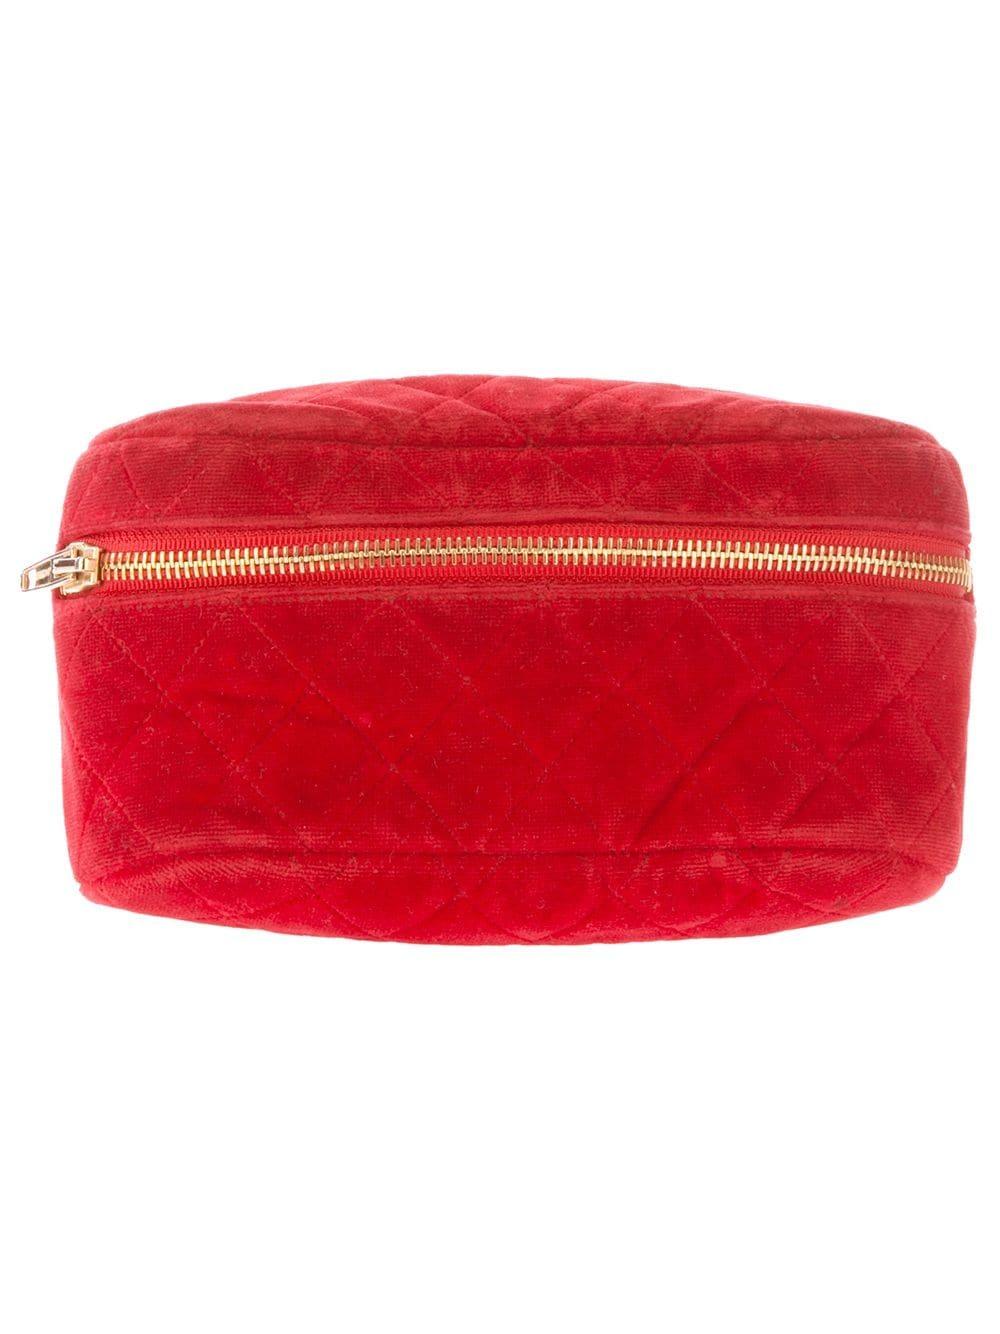 Chanel 1991 Vintage Red Velvet Quilted Medallion Fanny Pack Waist Belt Bag Rare For Sale 8